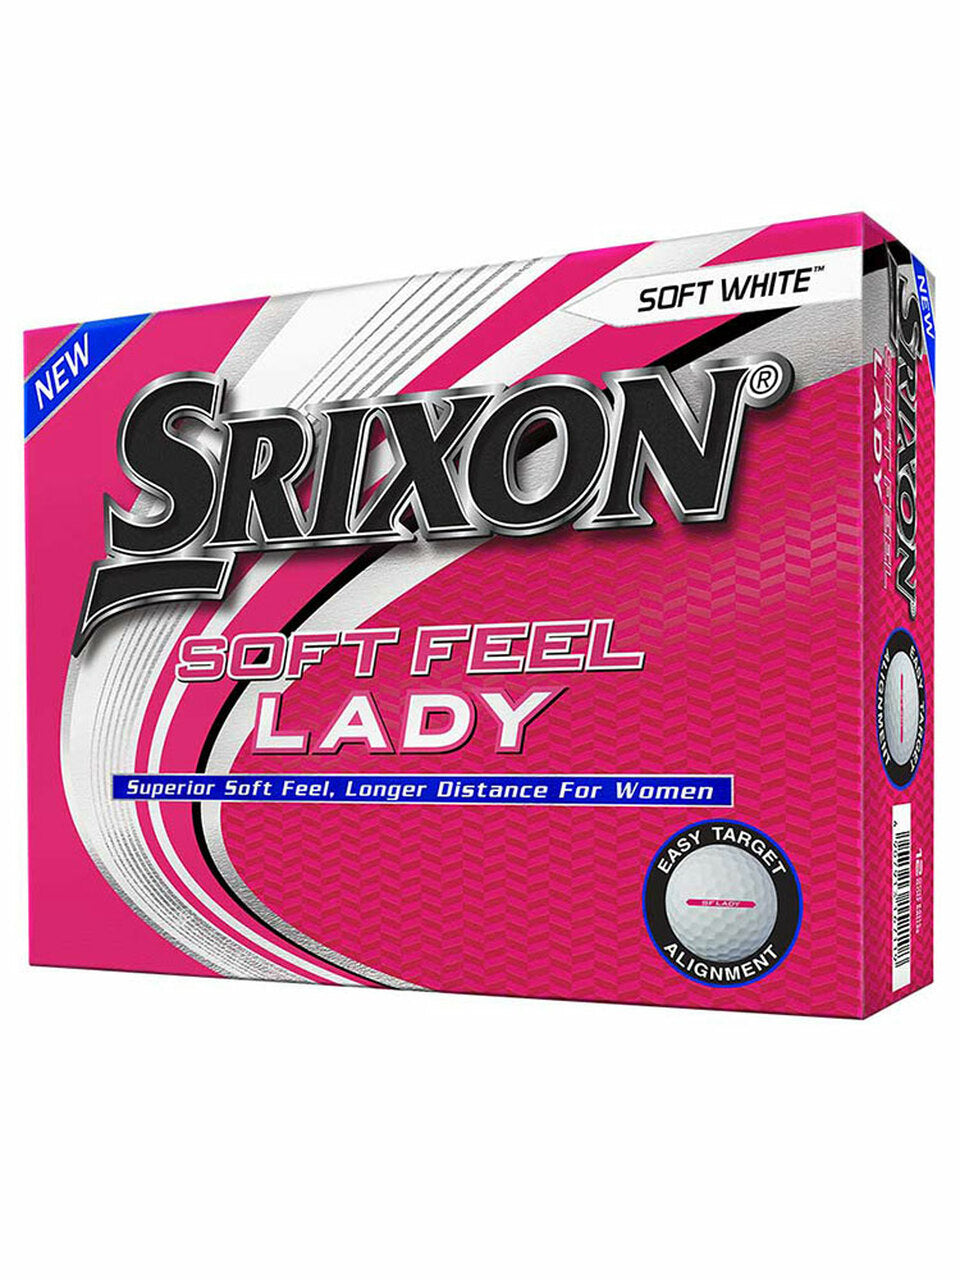 Srixon Soft Feel Lady Golf Balls - 1 Dozen White 2020